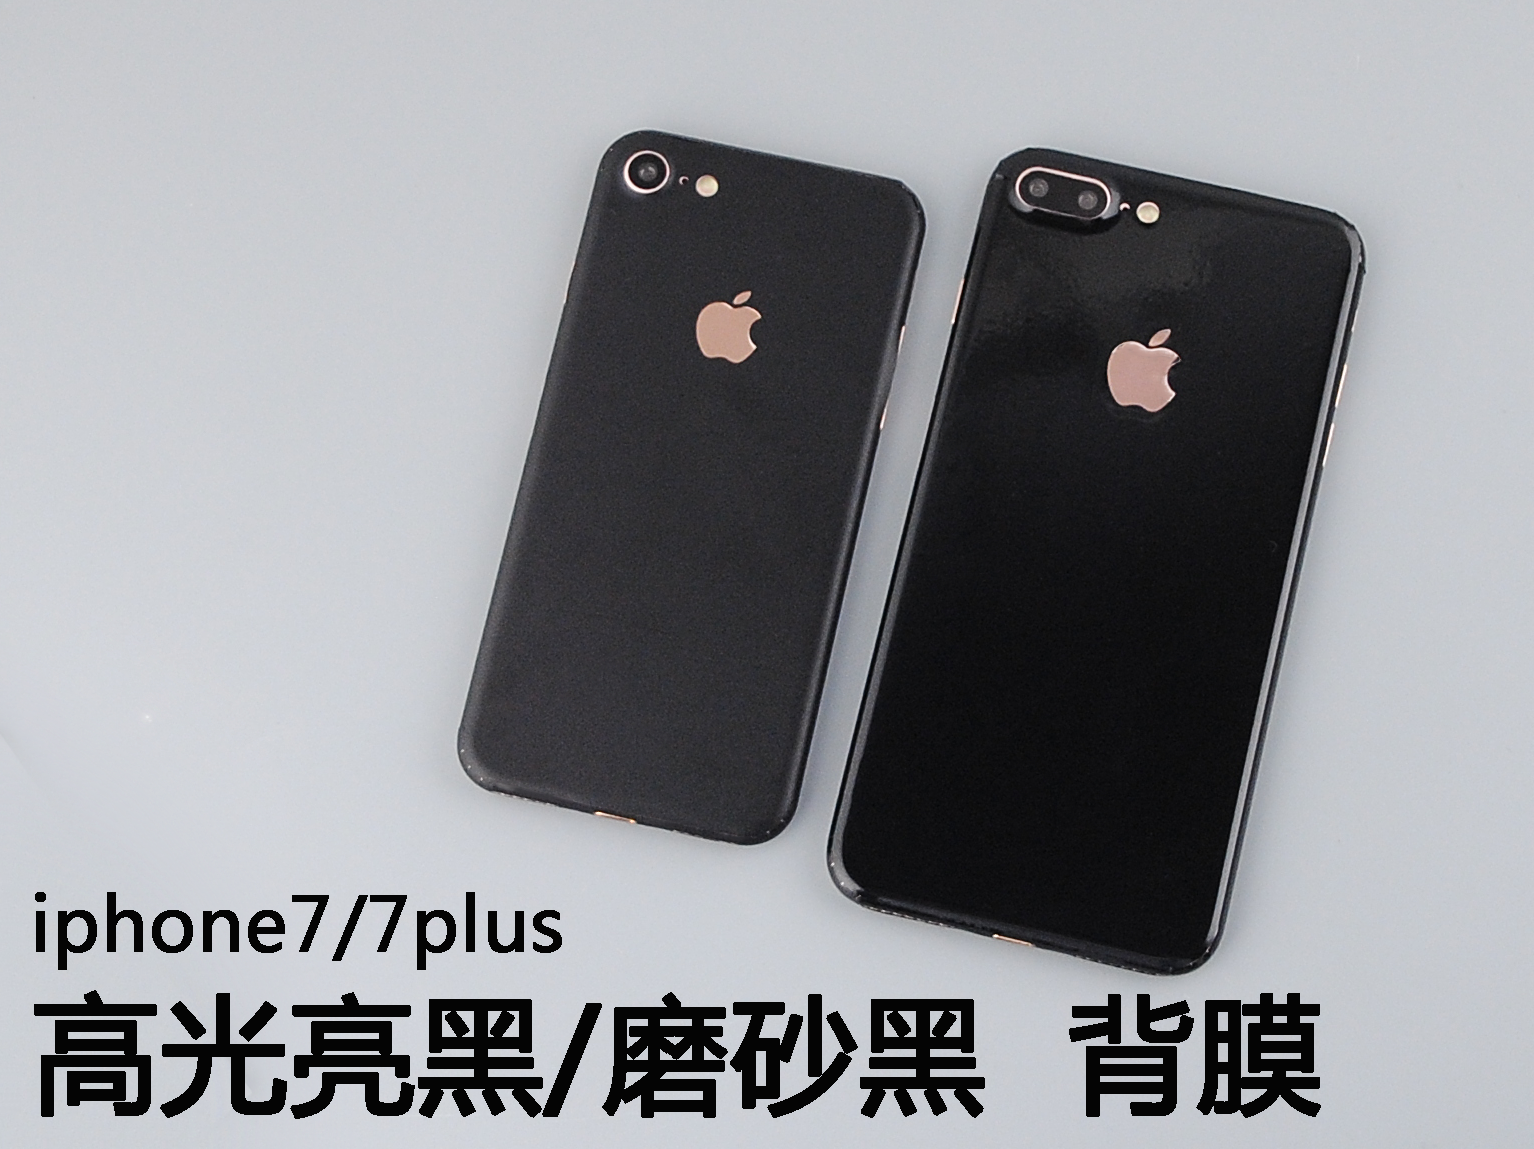 终于到手了，磨砂黑iPhone 7 Plus手机入手实拍-搜狐